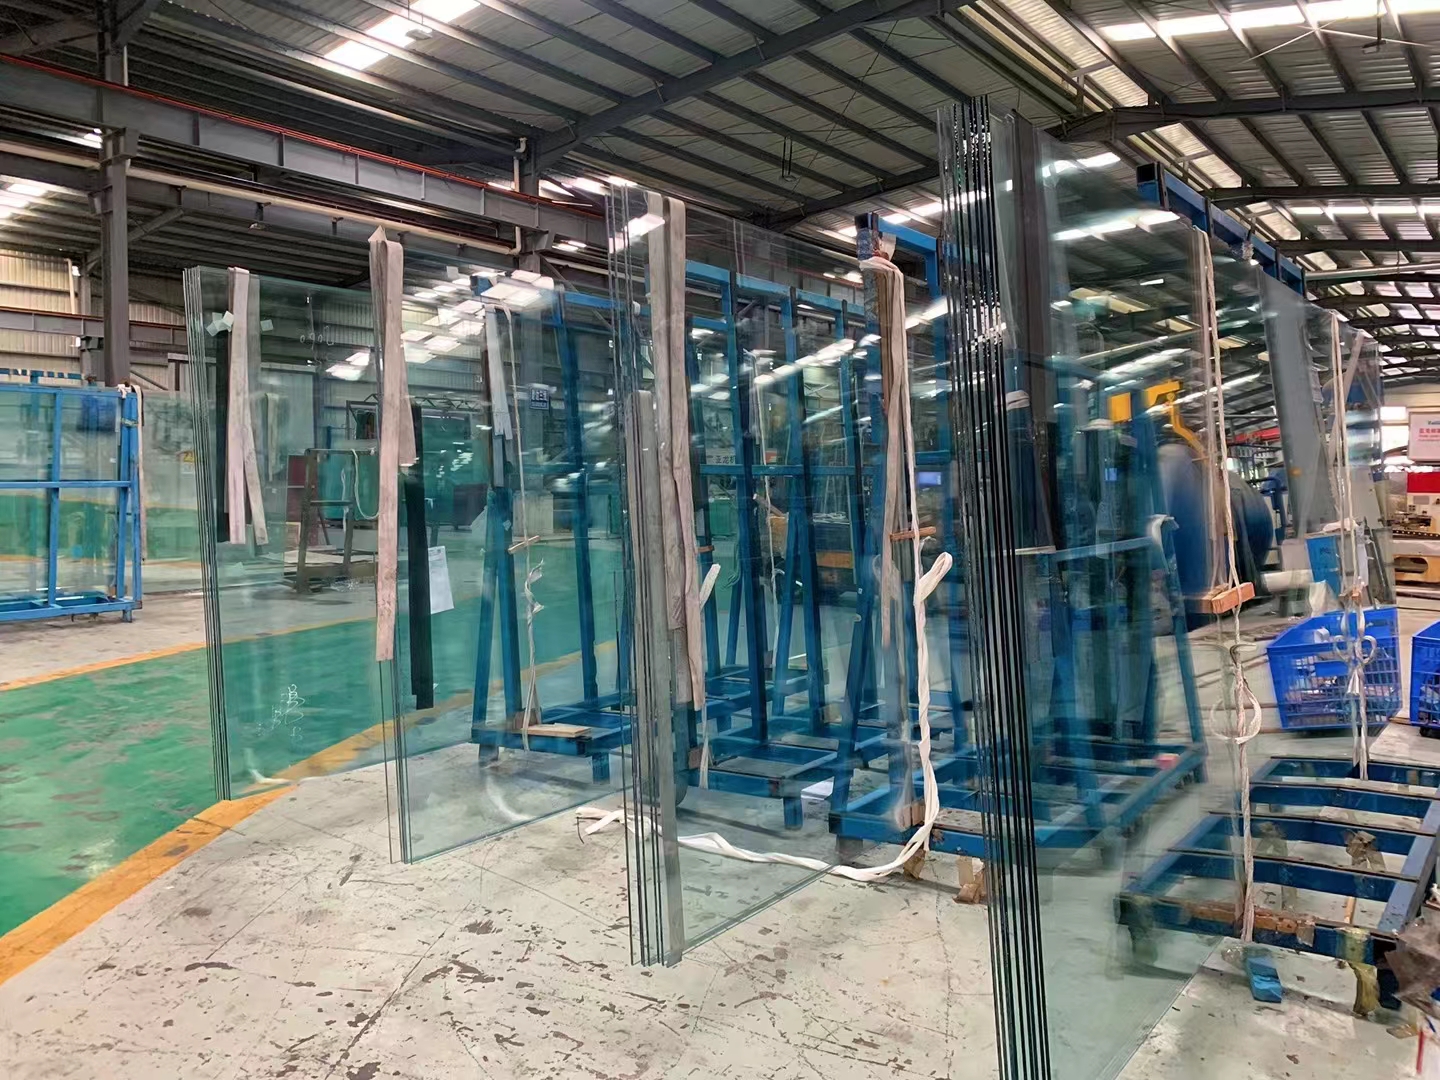 惠州哪里有雨棚夹胶玻璃生产厂家_佛山进口雨棚夹胶玻璃报价_佛山市盛通华鑫玻璃有限公司